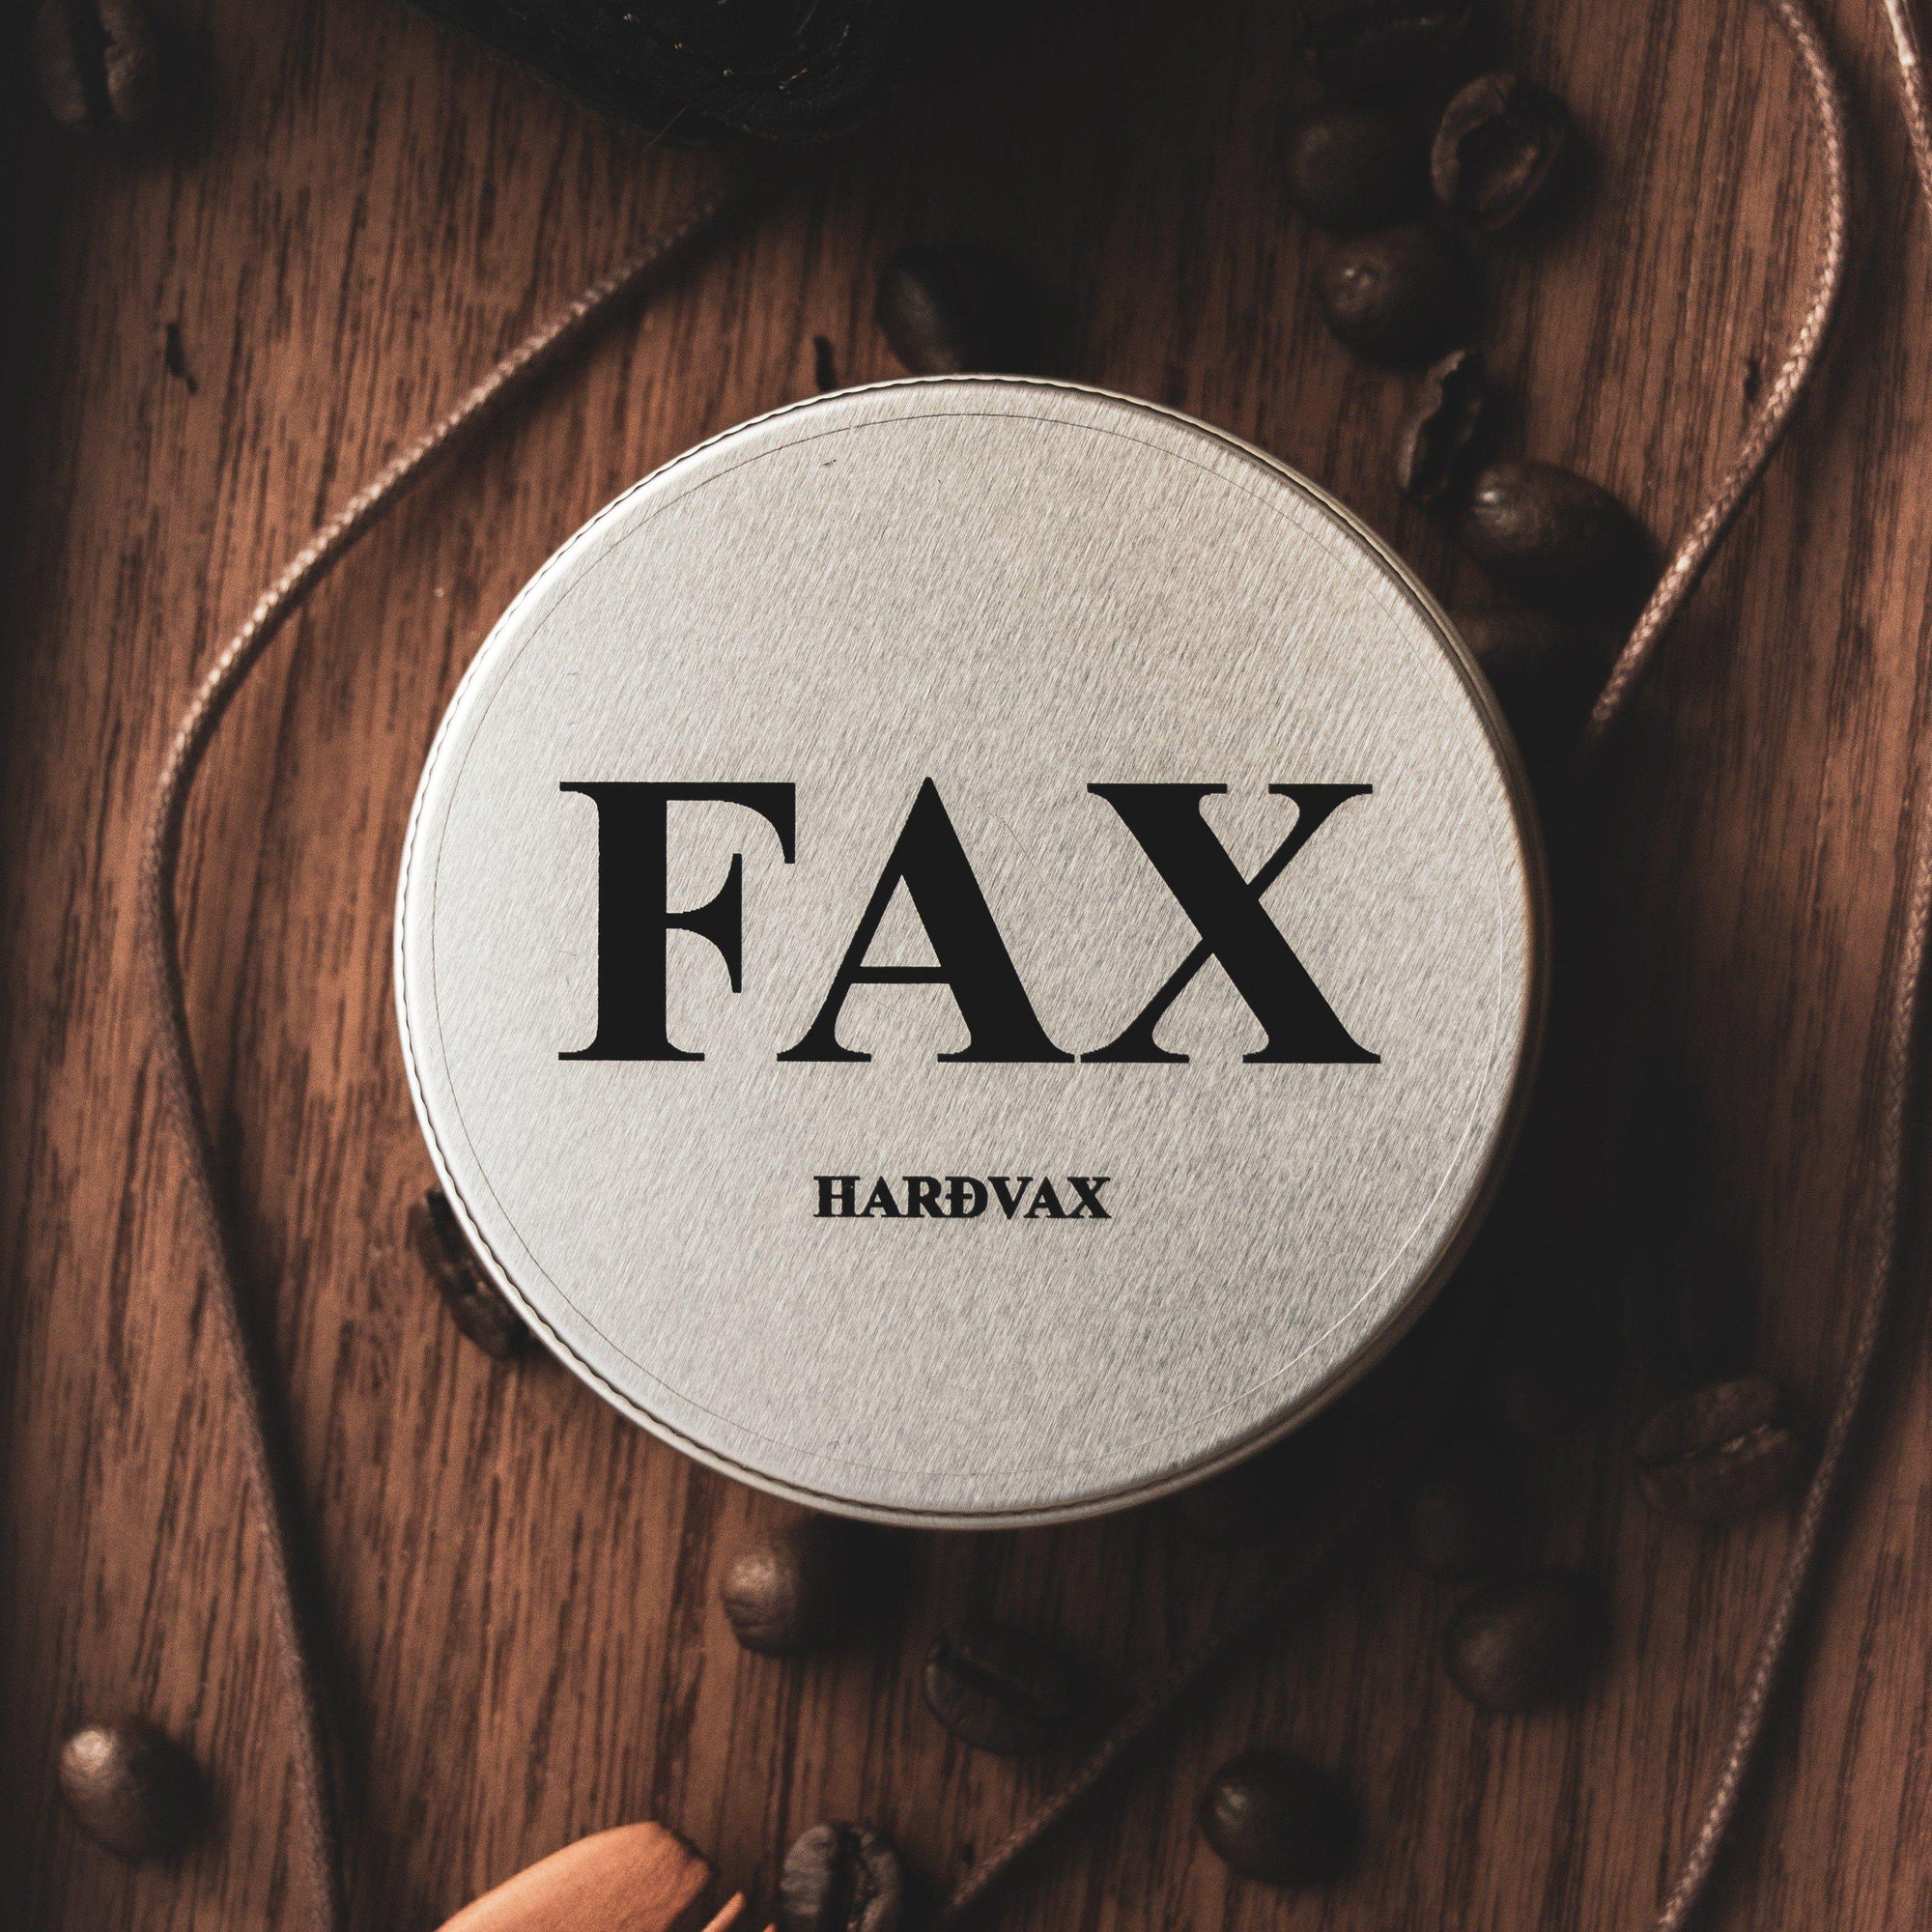 Fax Harðvax 100ml